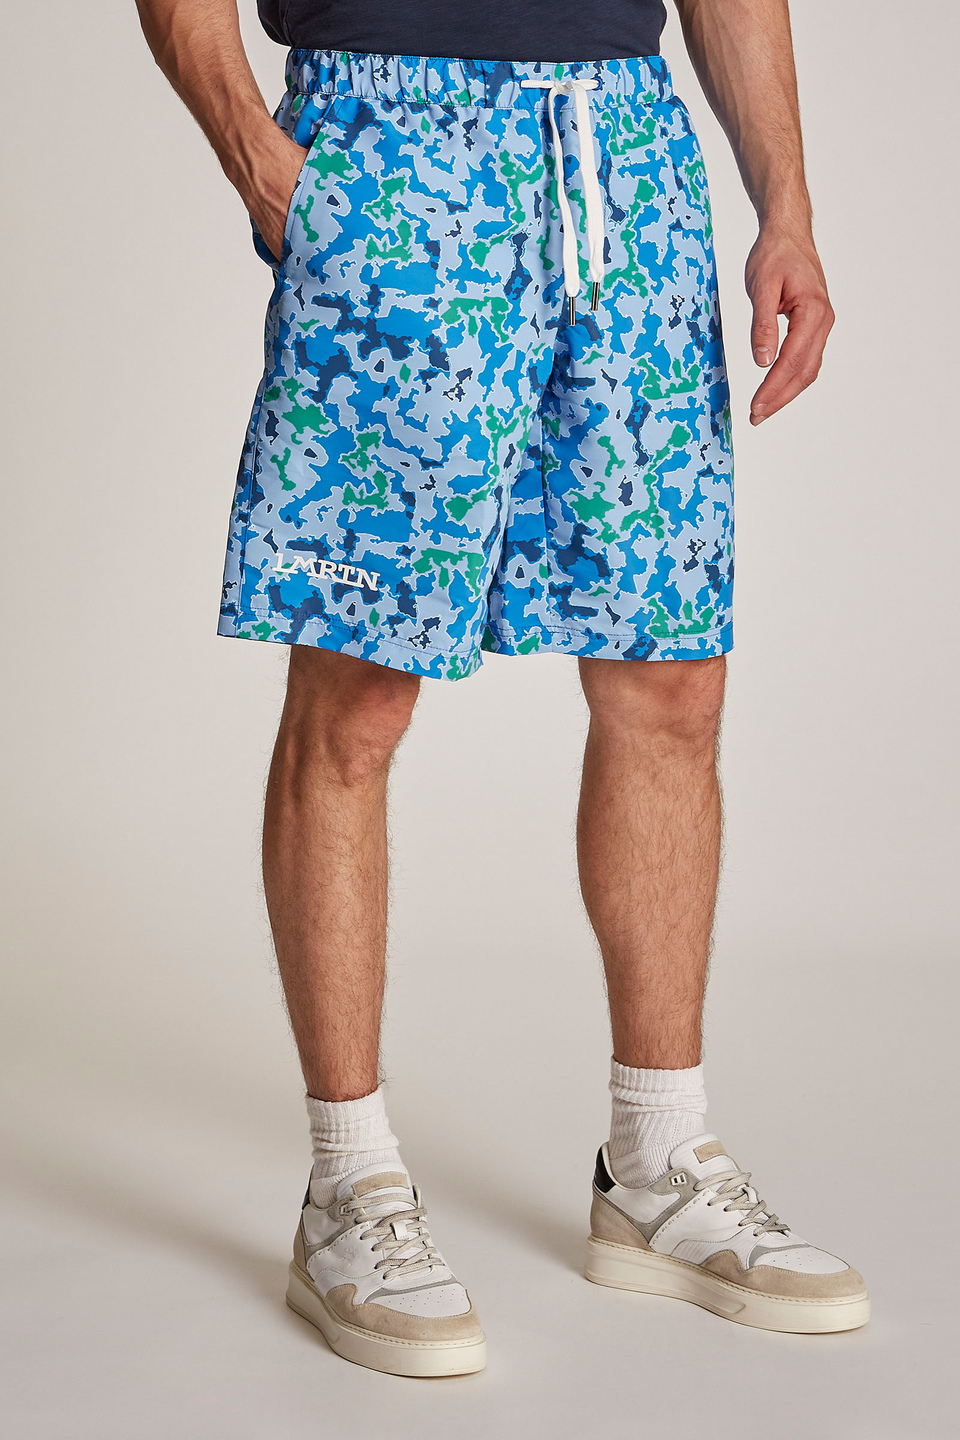 Men's comfort-fit Bermuda shorts | La Martina - Official Online Shop